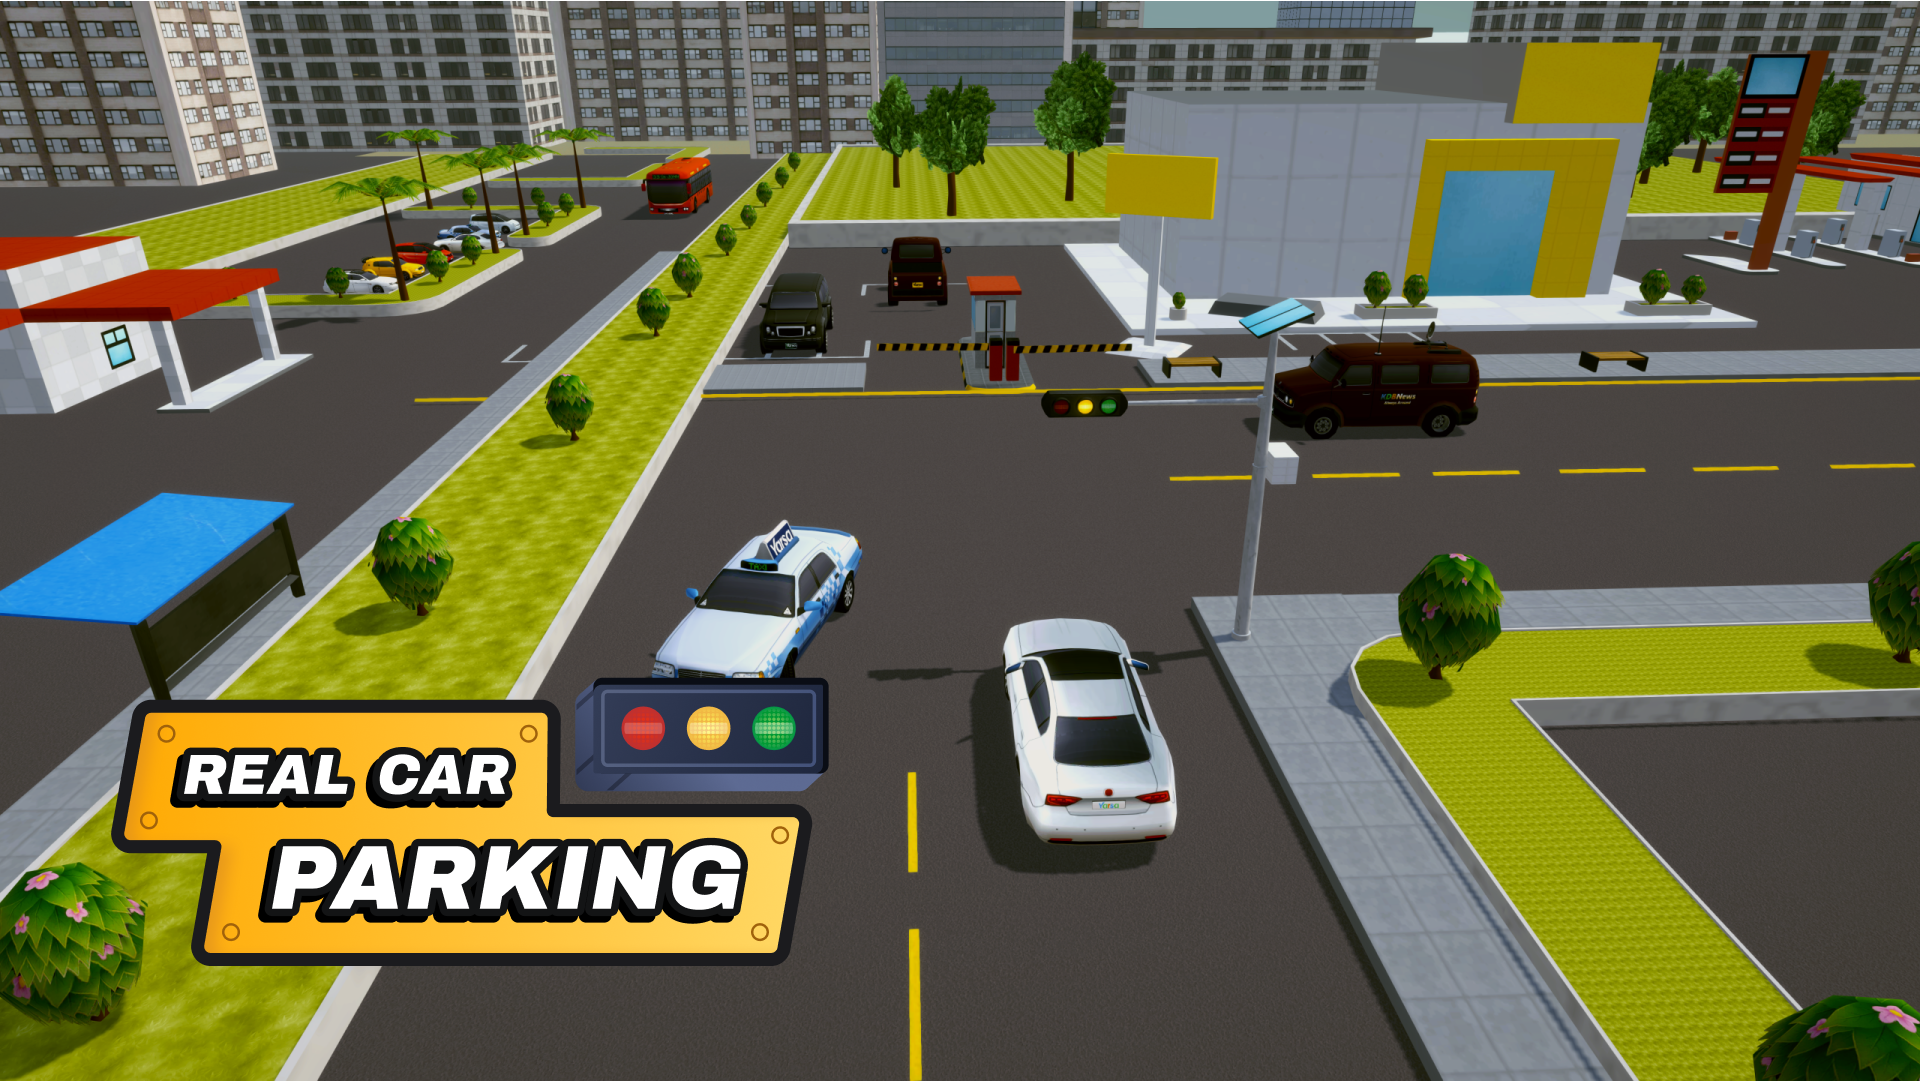 Download do APK de jogo de estacionamento offline para Android